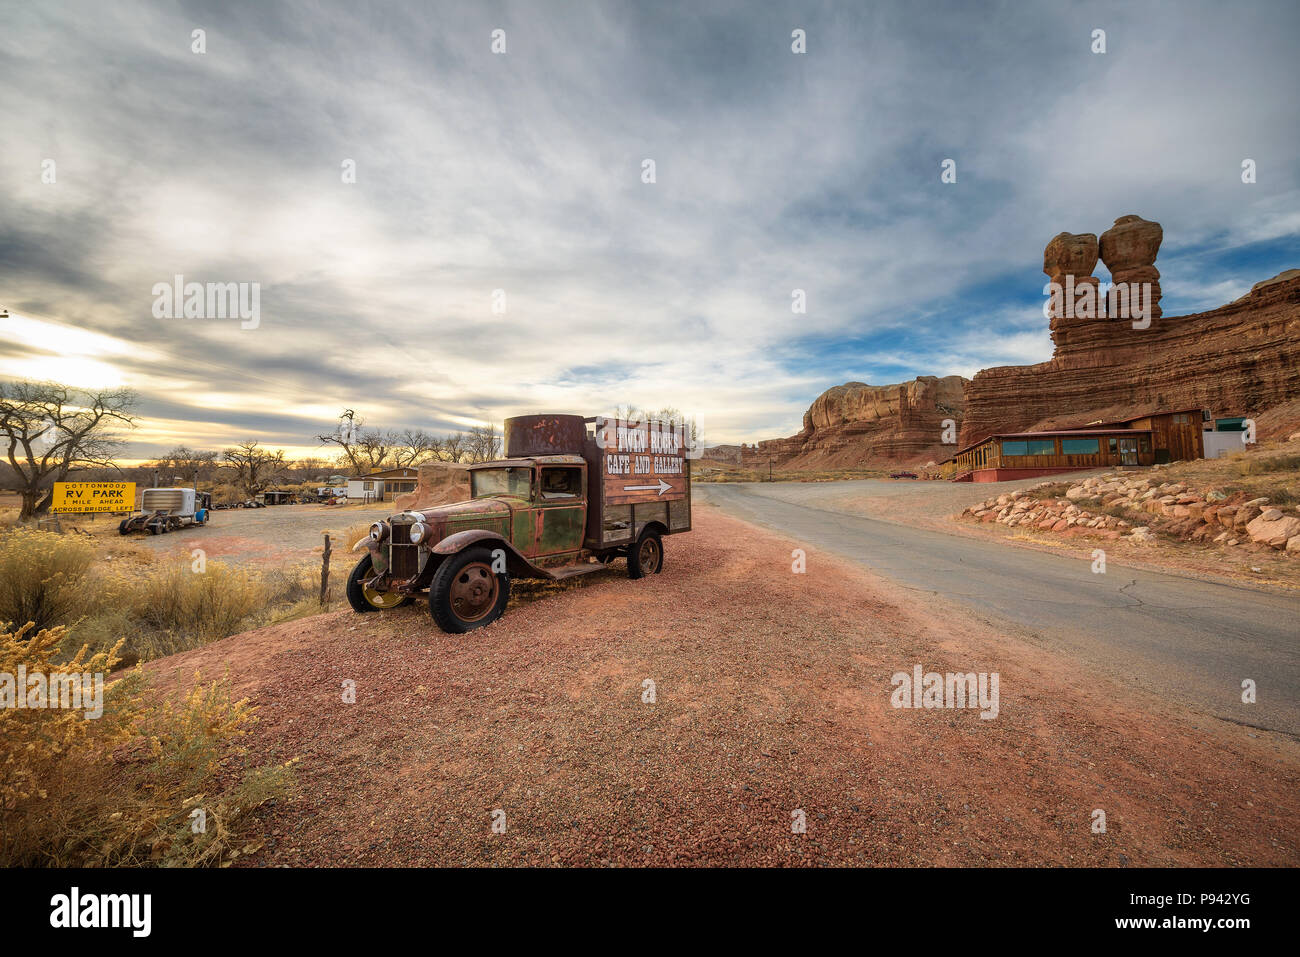 Camión antiguo con la publicidad para el Twin Rocks Café y Galería en Bluff, Utah Foto de stock